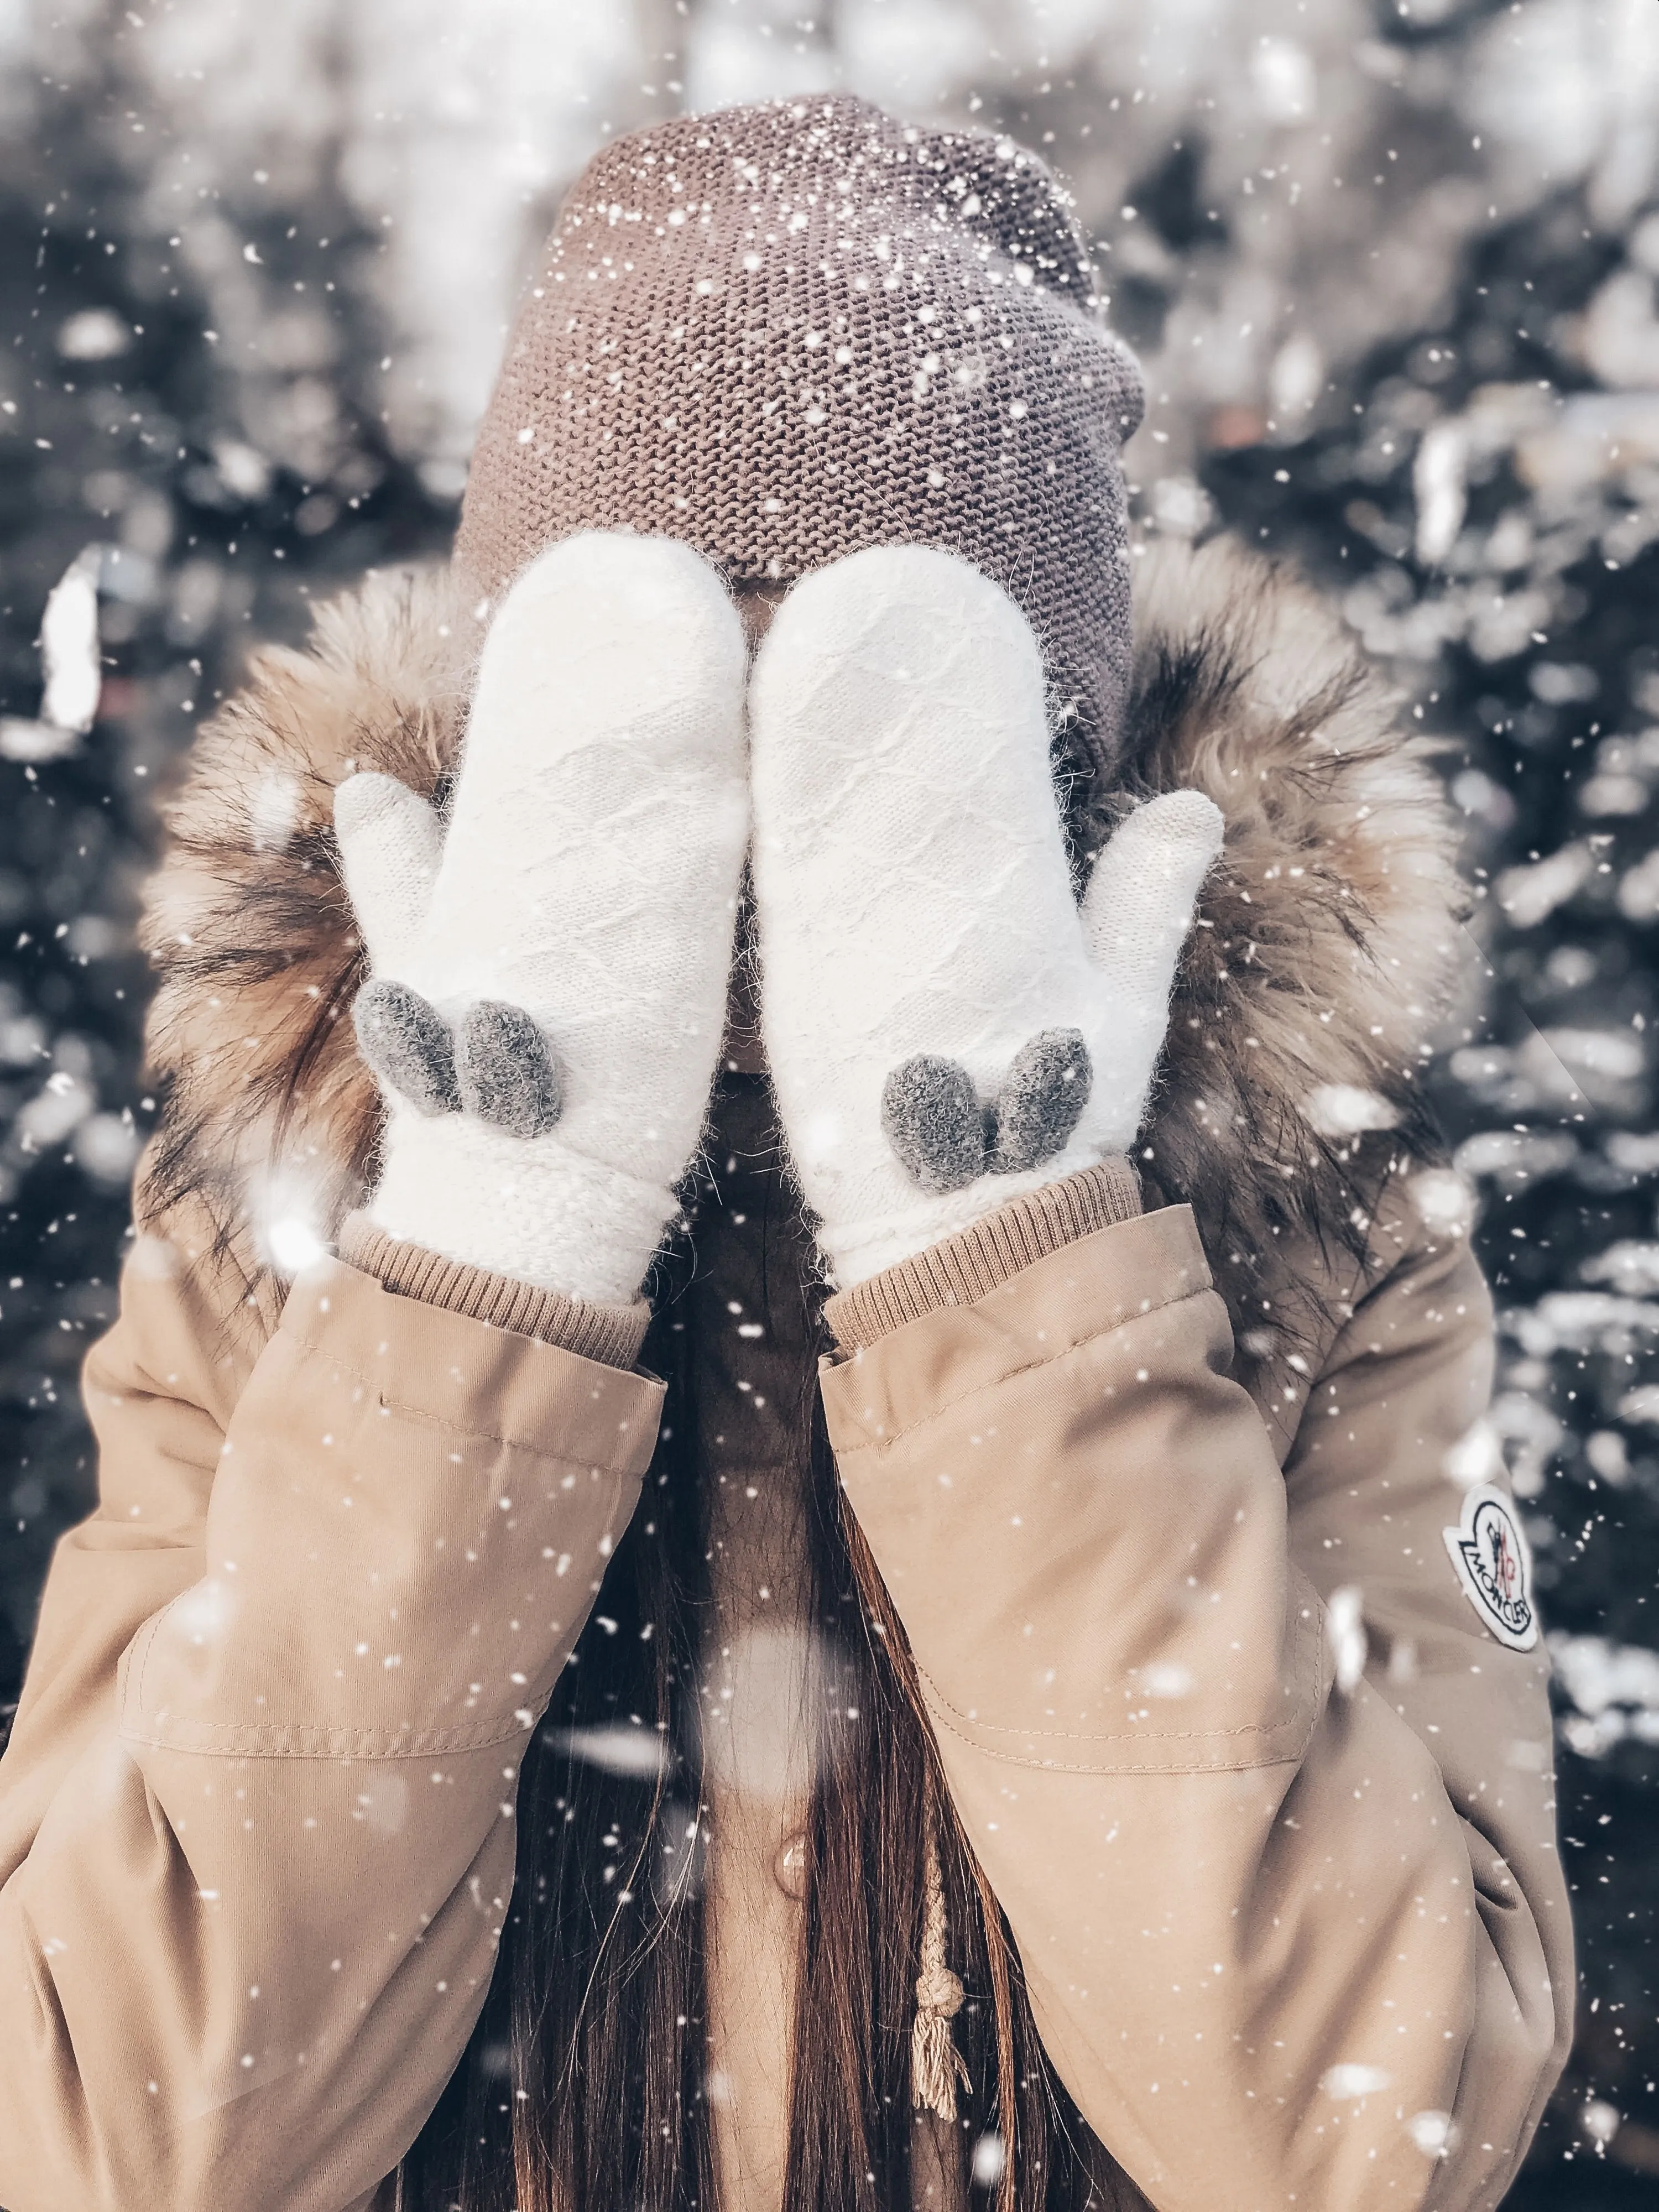 Фото на аватарку зима без лица